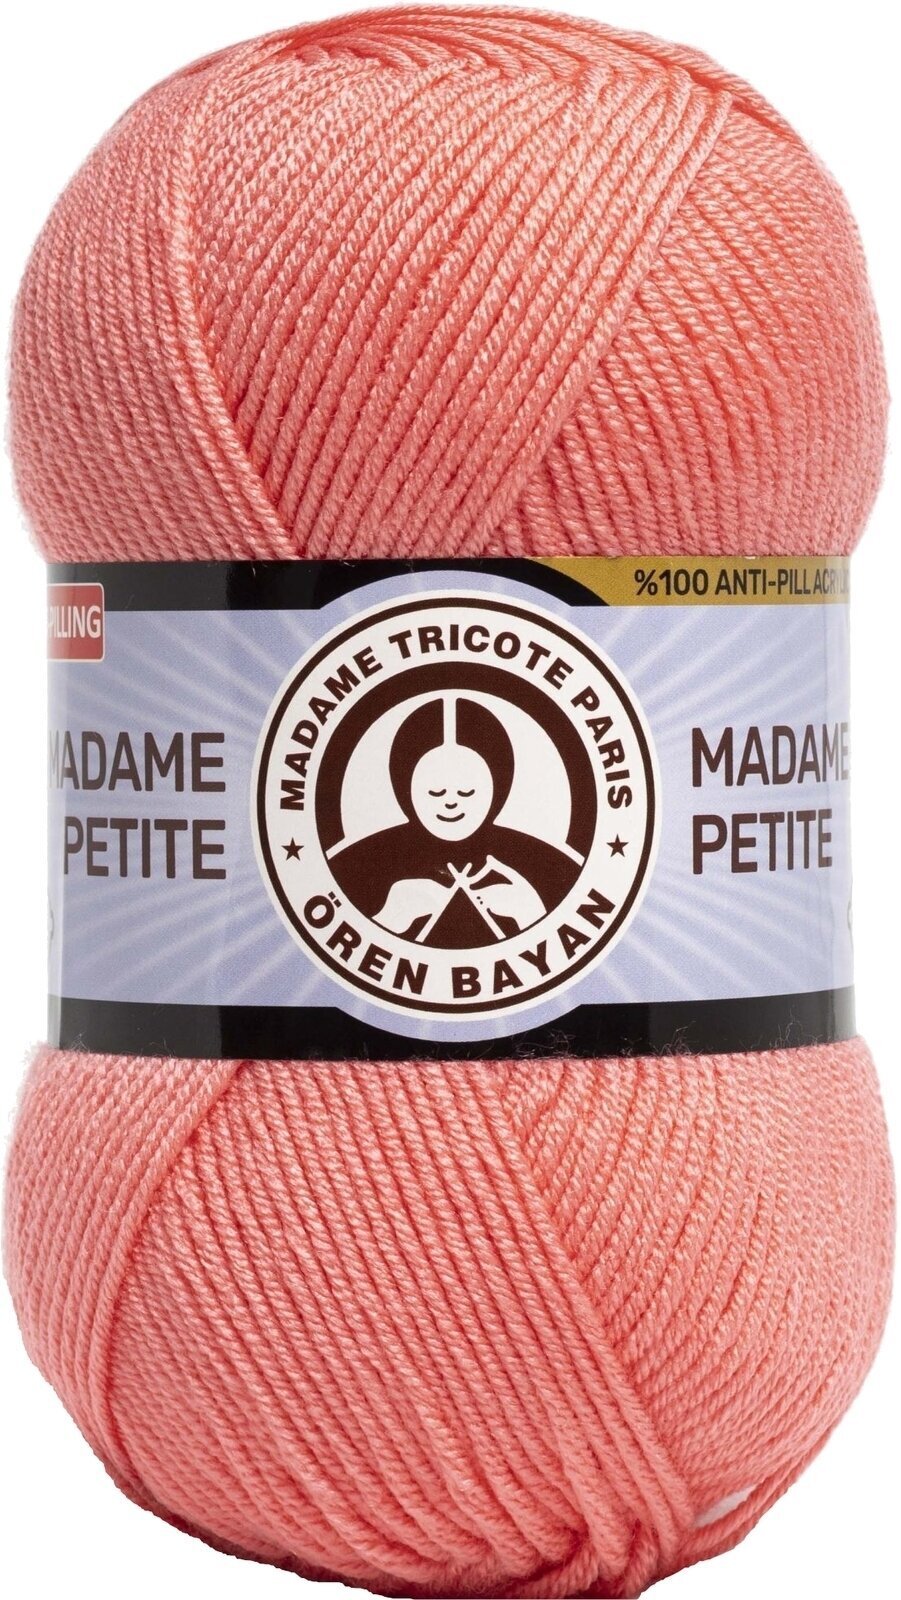 Hilo de tejer Madame Tricote Paris Madame Petite 3848 36 Hilo de tejer